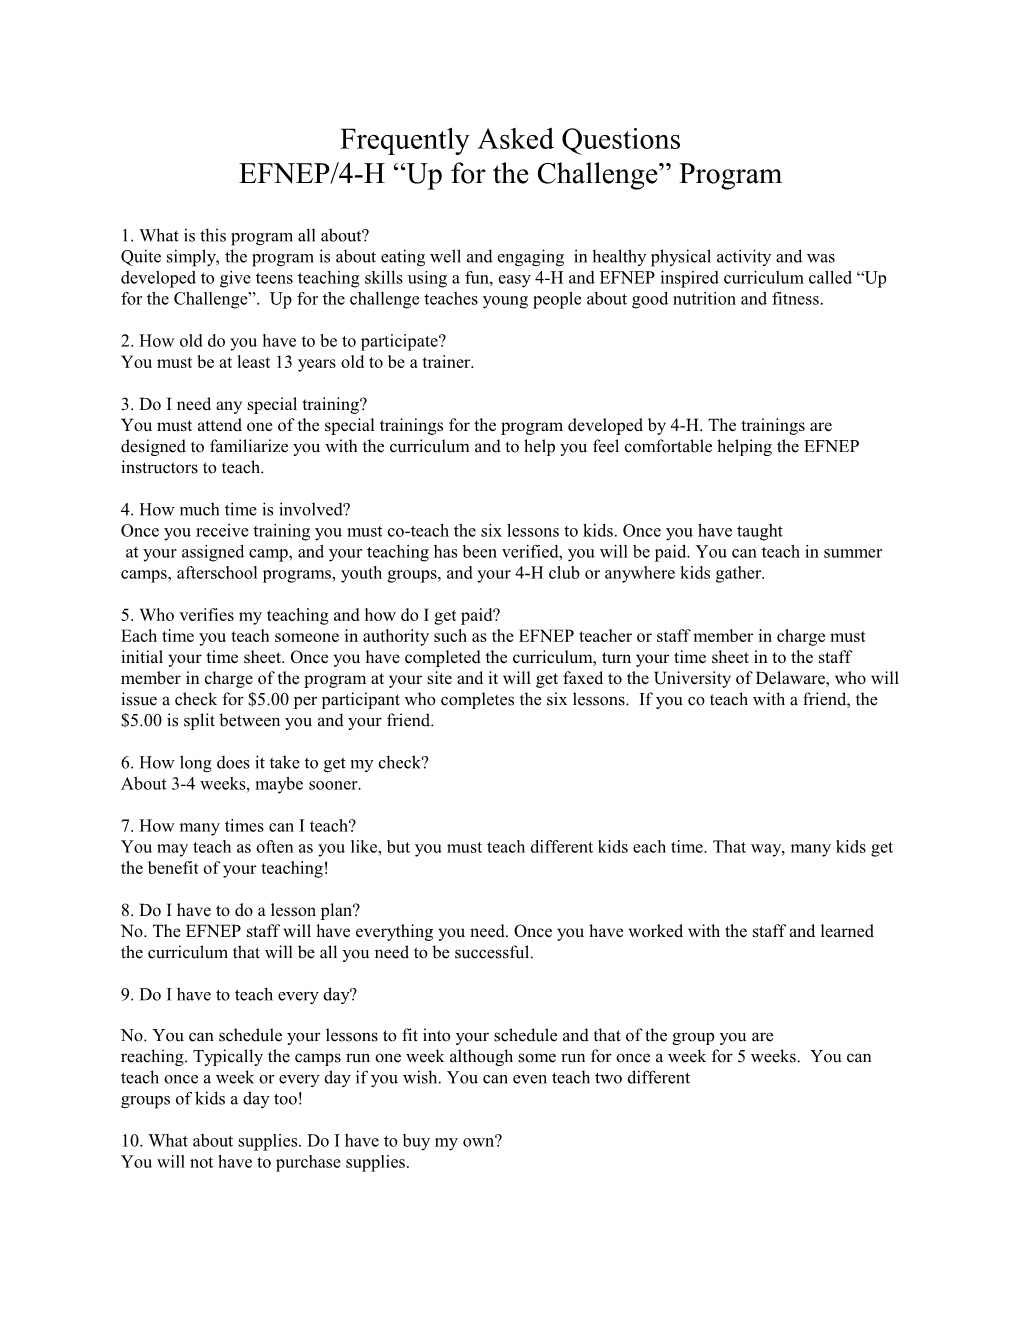 EFNEP/4-H up for the Challenge Program